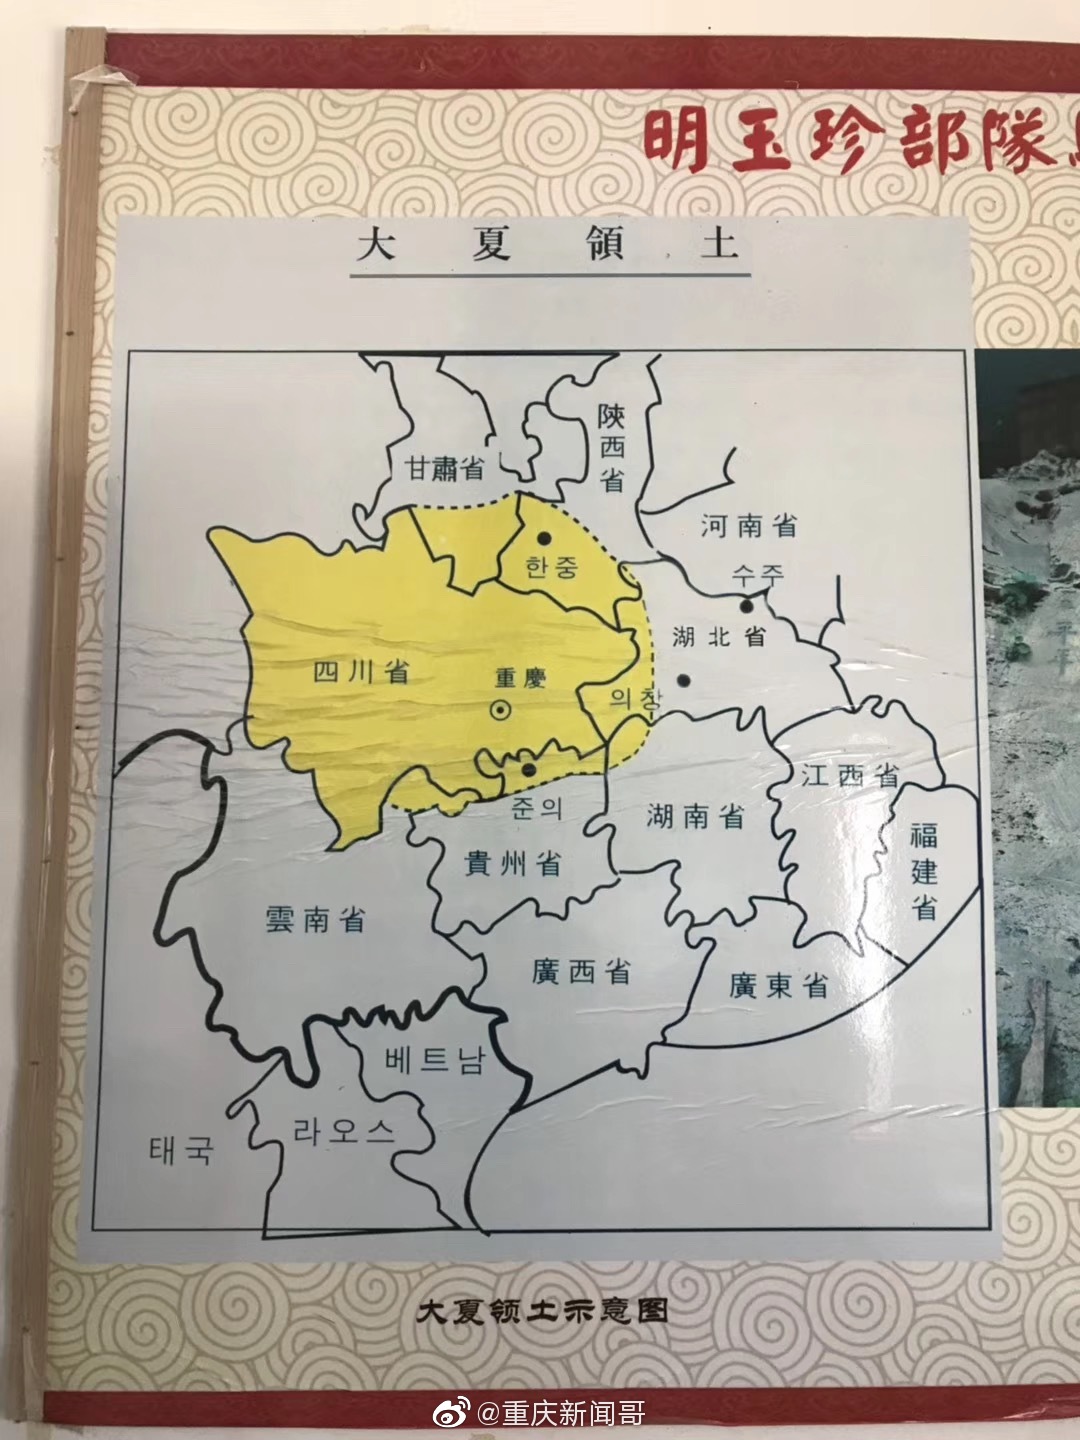 明玉珍势力地图图片